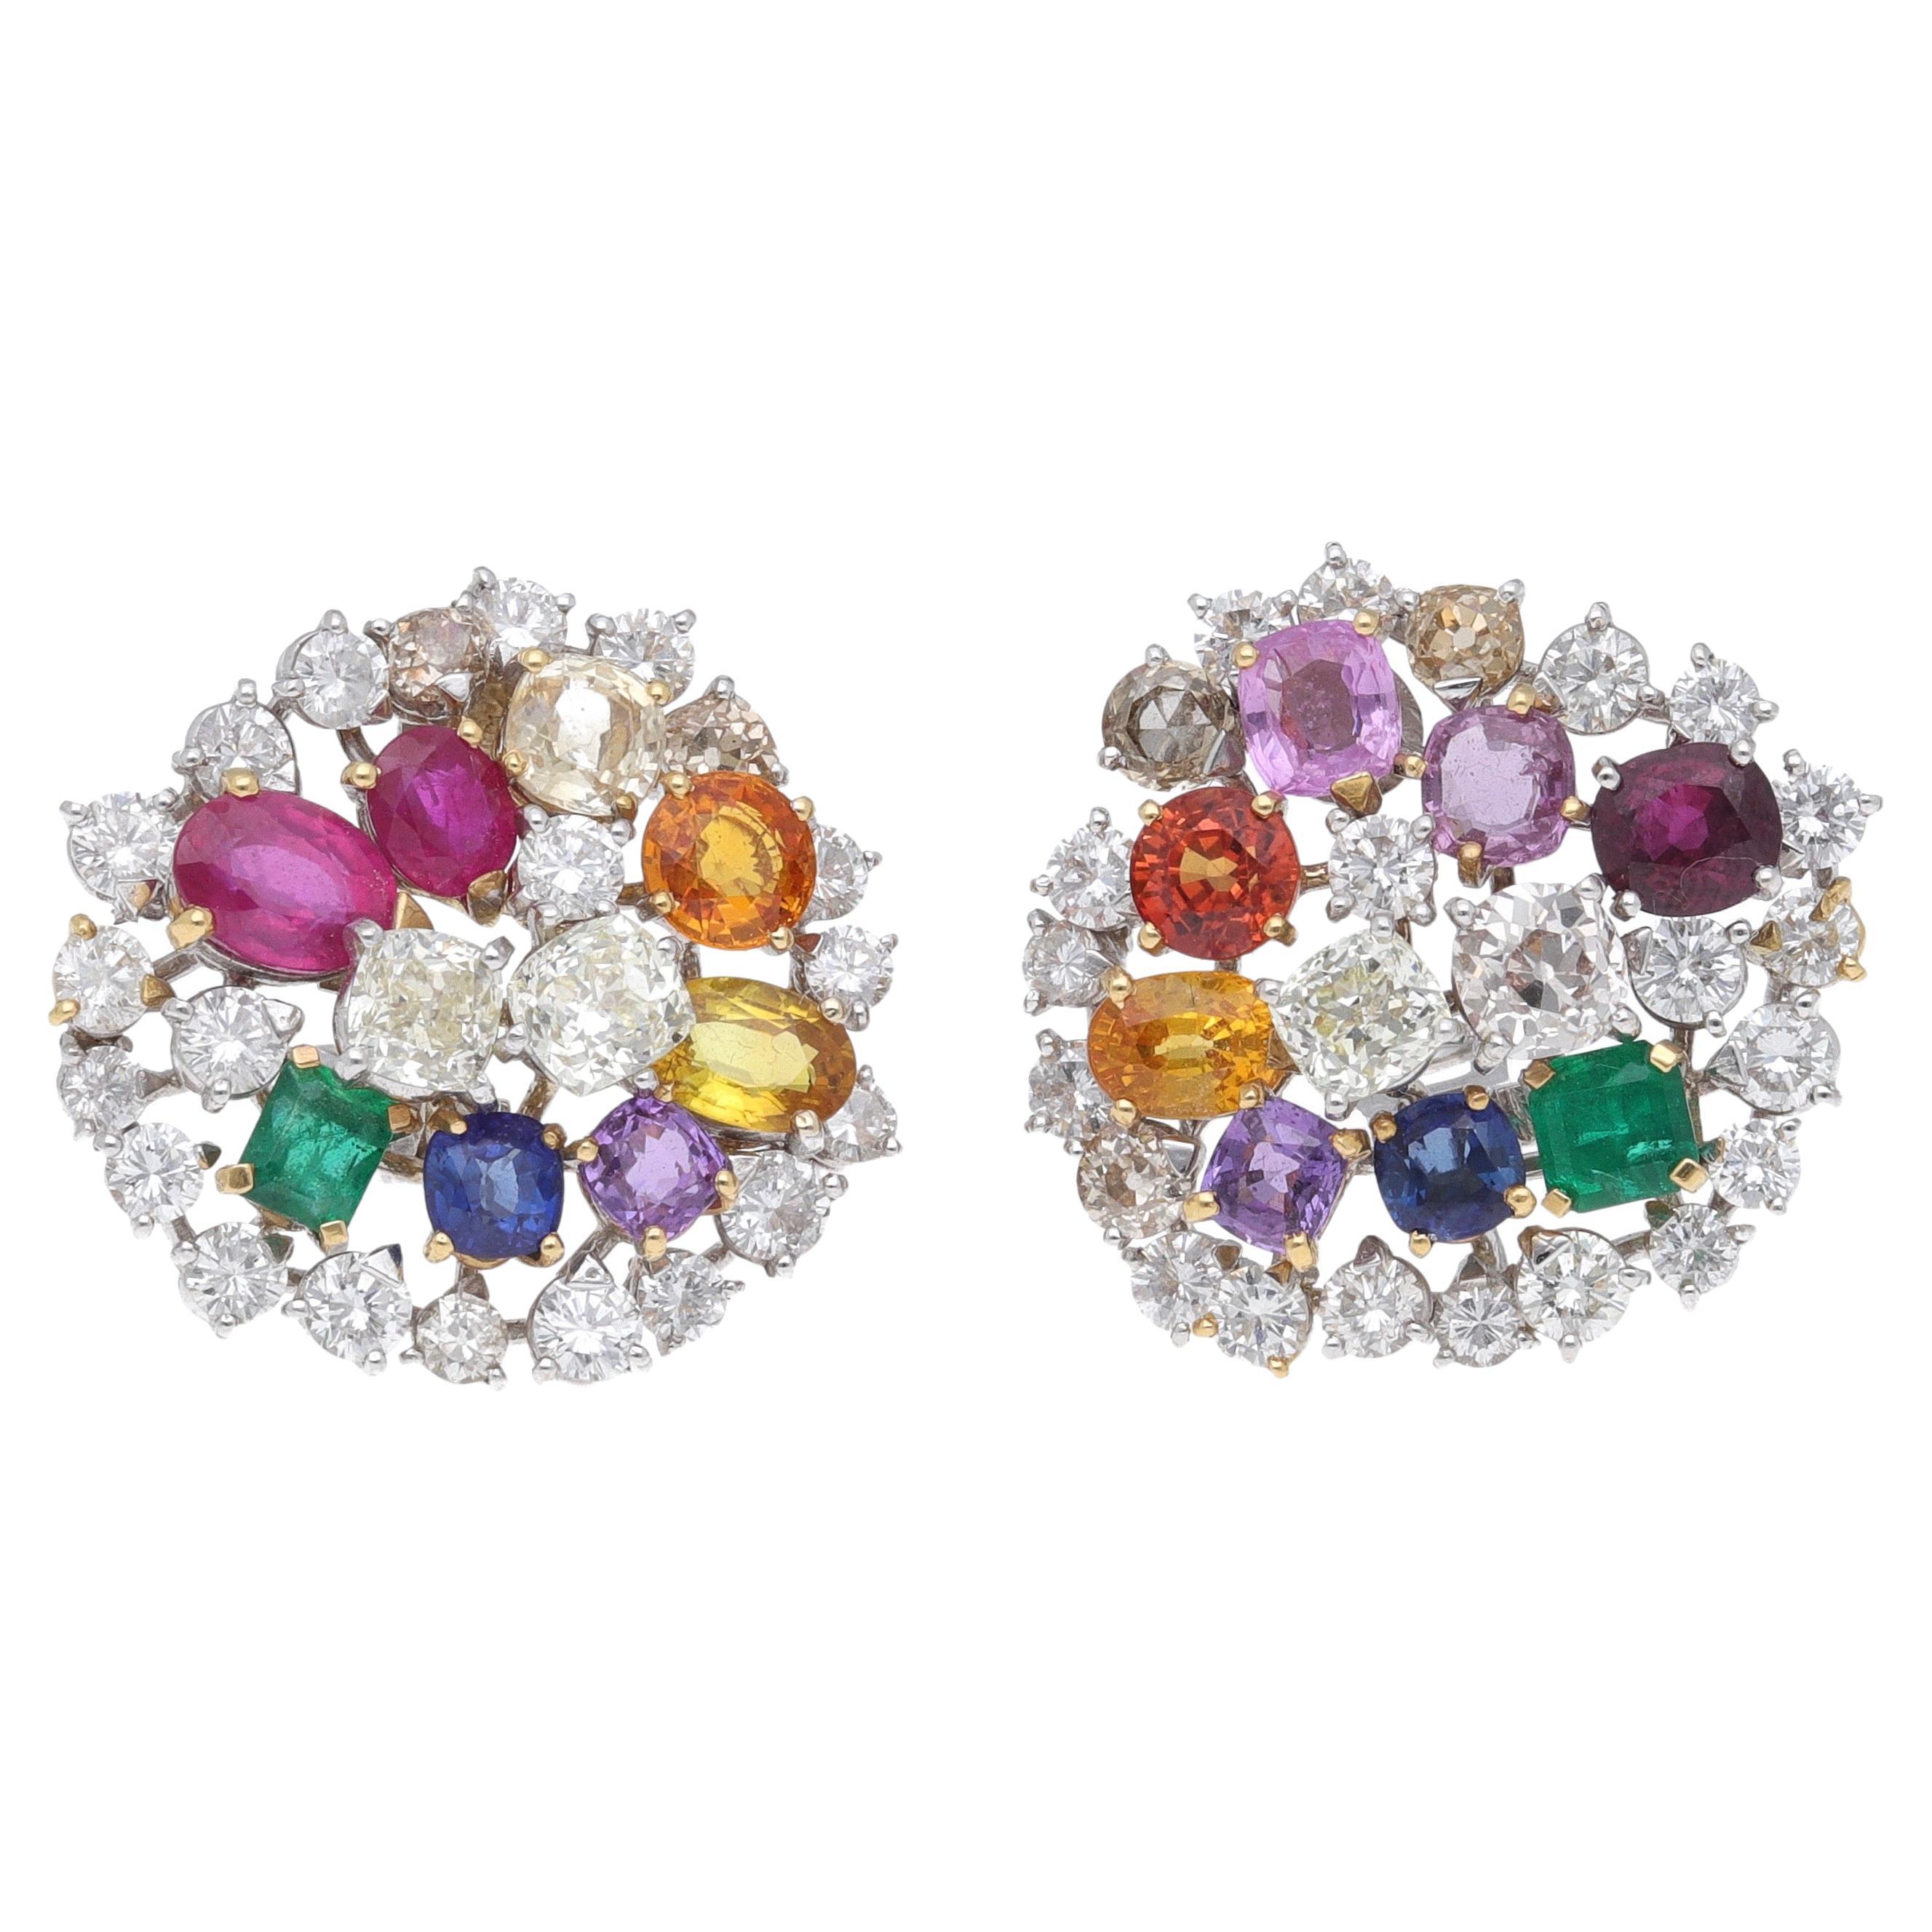 Ohrringe aus 18 Karat Weißgold mit Diamanten, Rubinen, Smaragden und Saphiren von Fraleoni